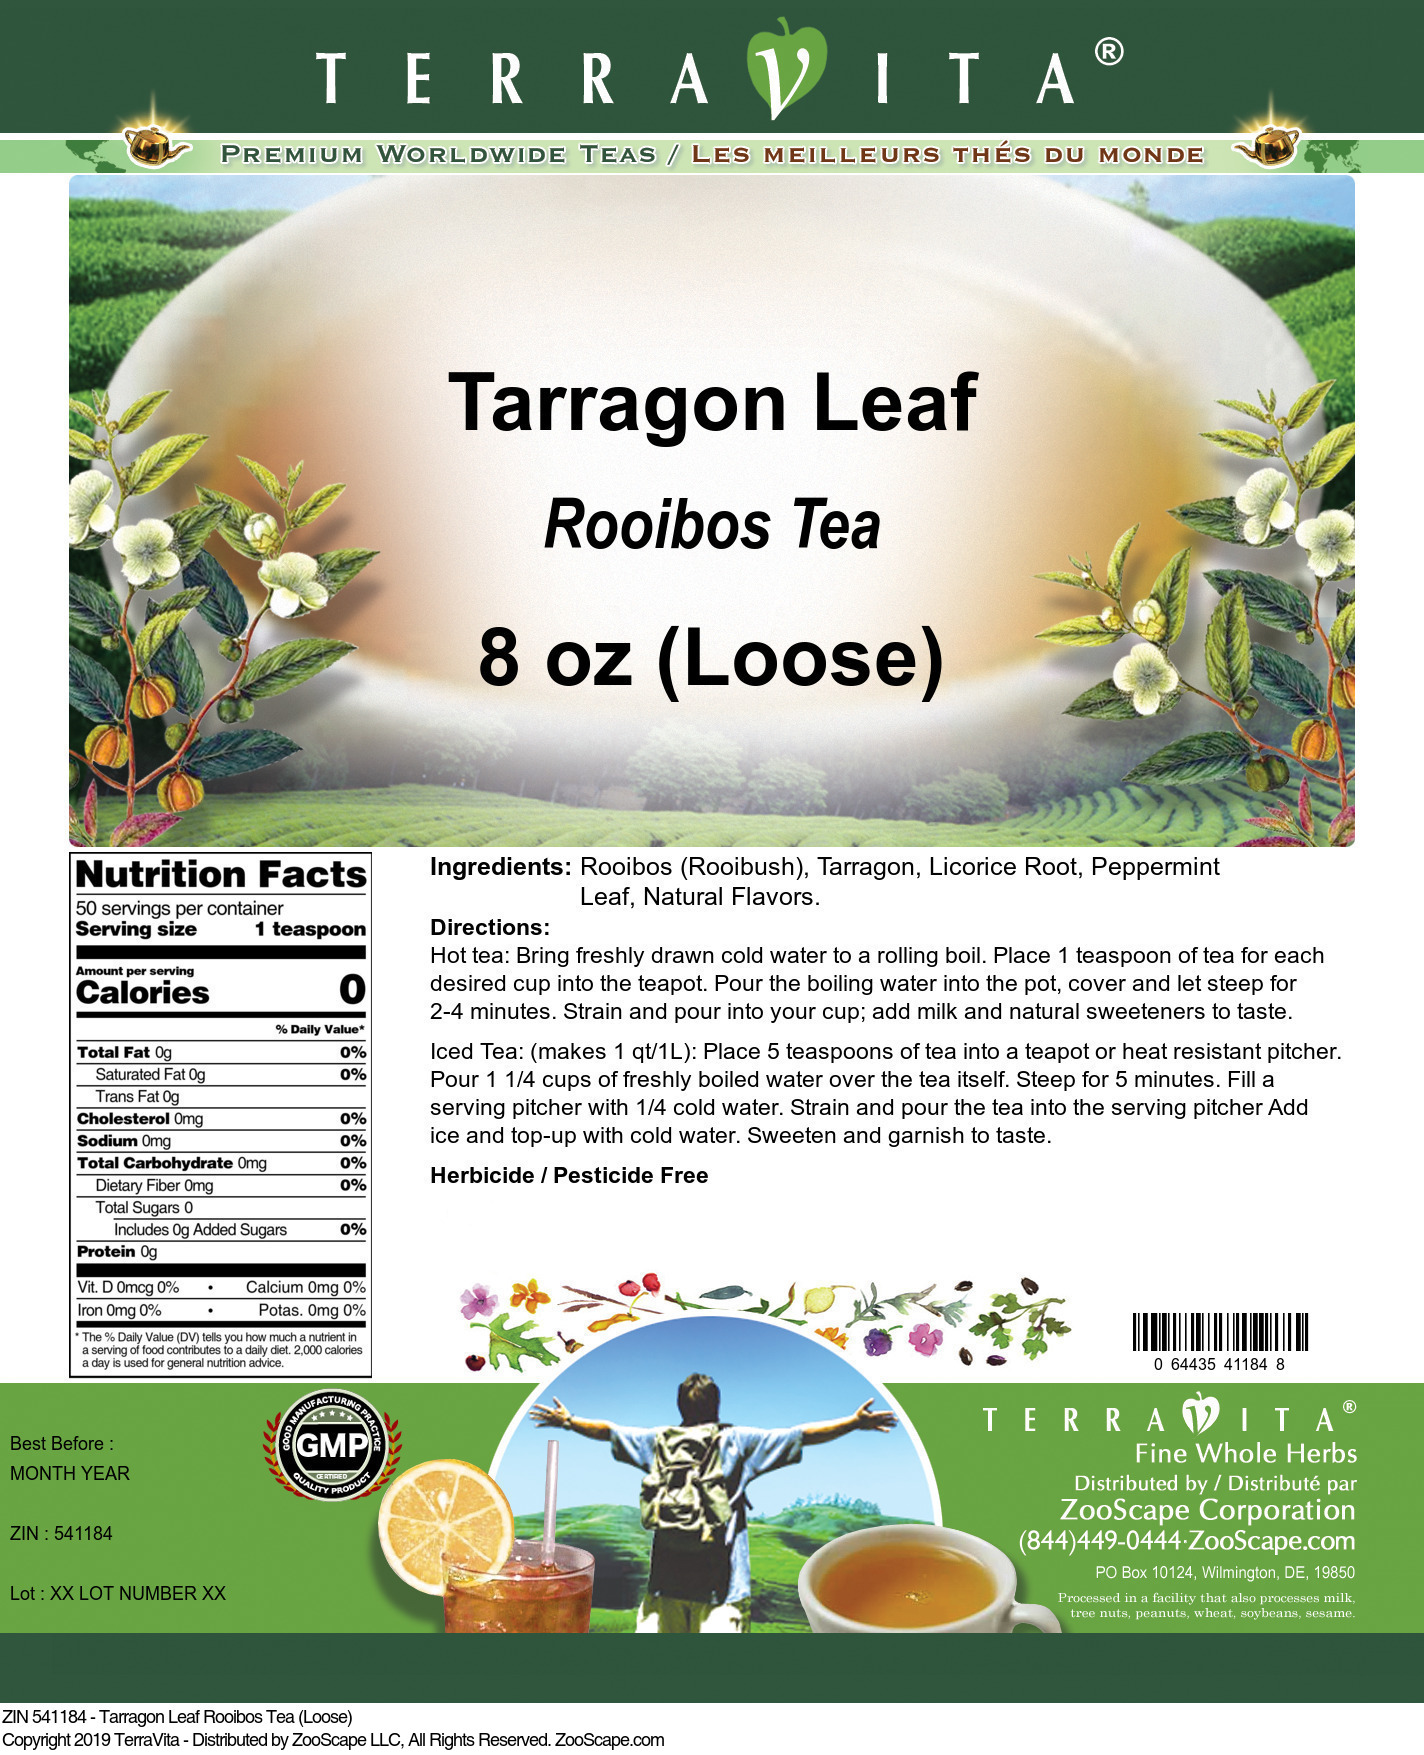 Tarragon Leaf Rooibos Tea (Loose) - Label